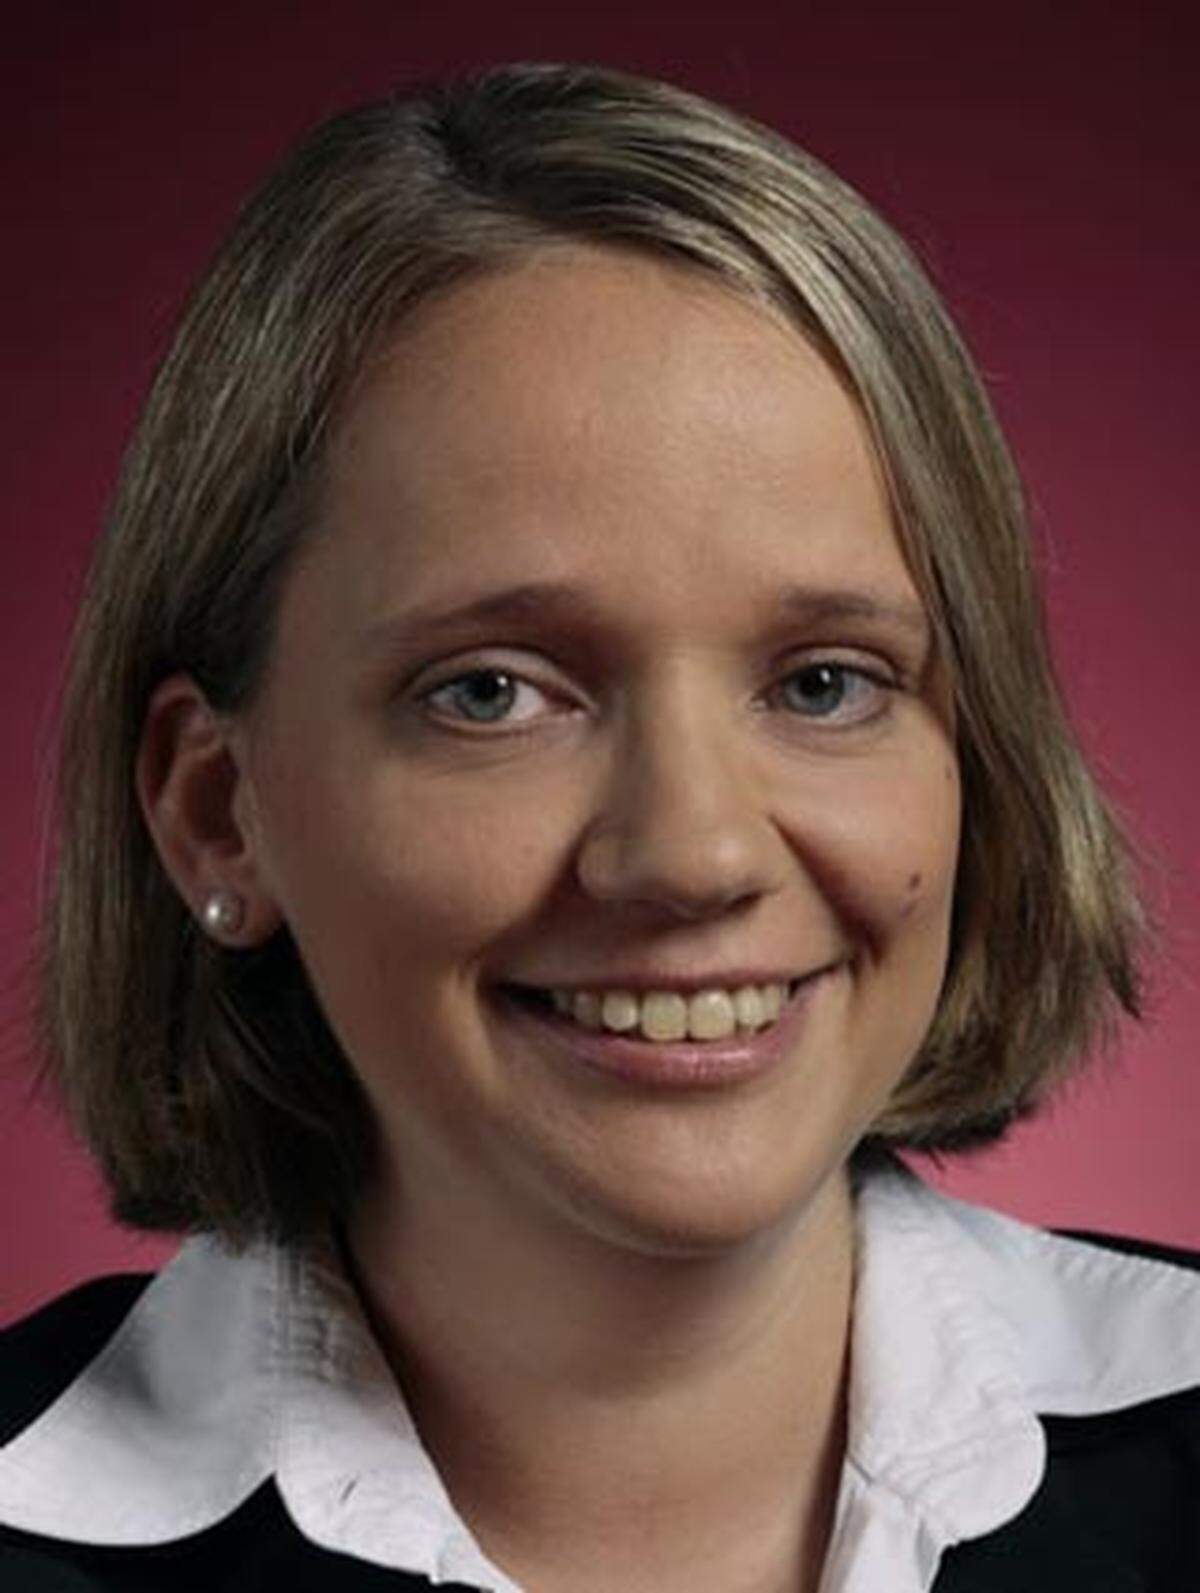 Seit Juni ist Elisabeth Müller (32) im Team „Competition &amp; Antitrust“ tätig. Davor war die promovierte Rechtswissenschafterin für sechs Jahre in der Bundeswettbewerbsbehörde als Referentin beschäftigt.